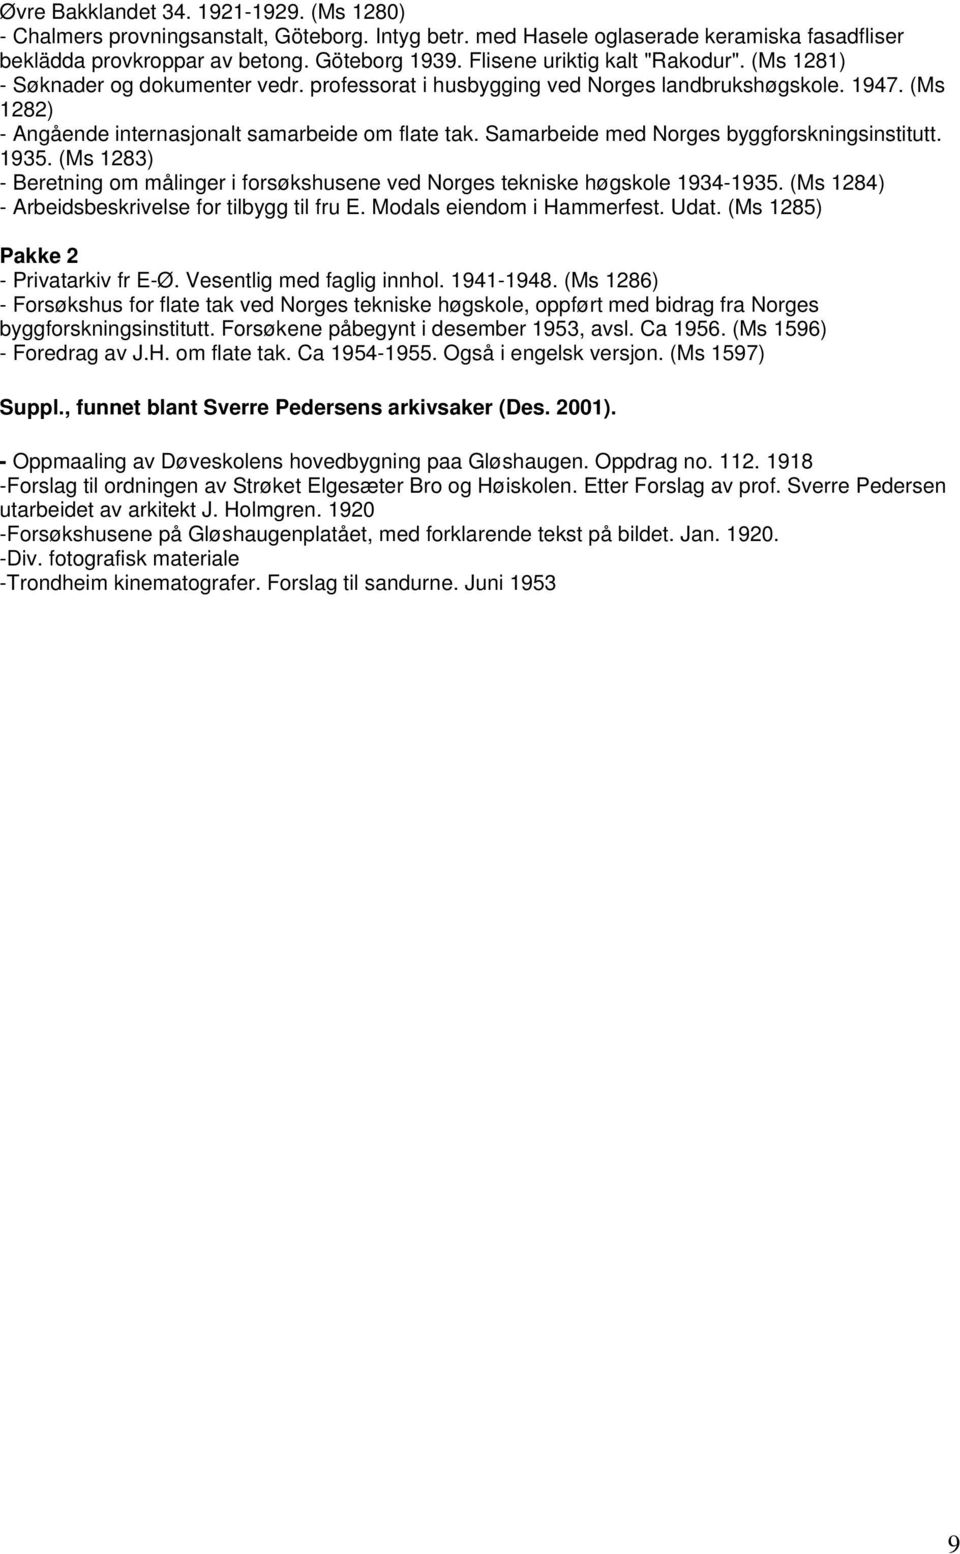 Samarbeide med Norges byggforskningsinstitutt. 1935. (Ms 1283) - Beretning om målinger i forsøkshusene ved Norges tekniske høgskole 1934-1935. (Ms 1284) - Arbeidsbeskrivelse for tilbygg til fru E.